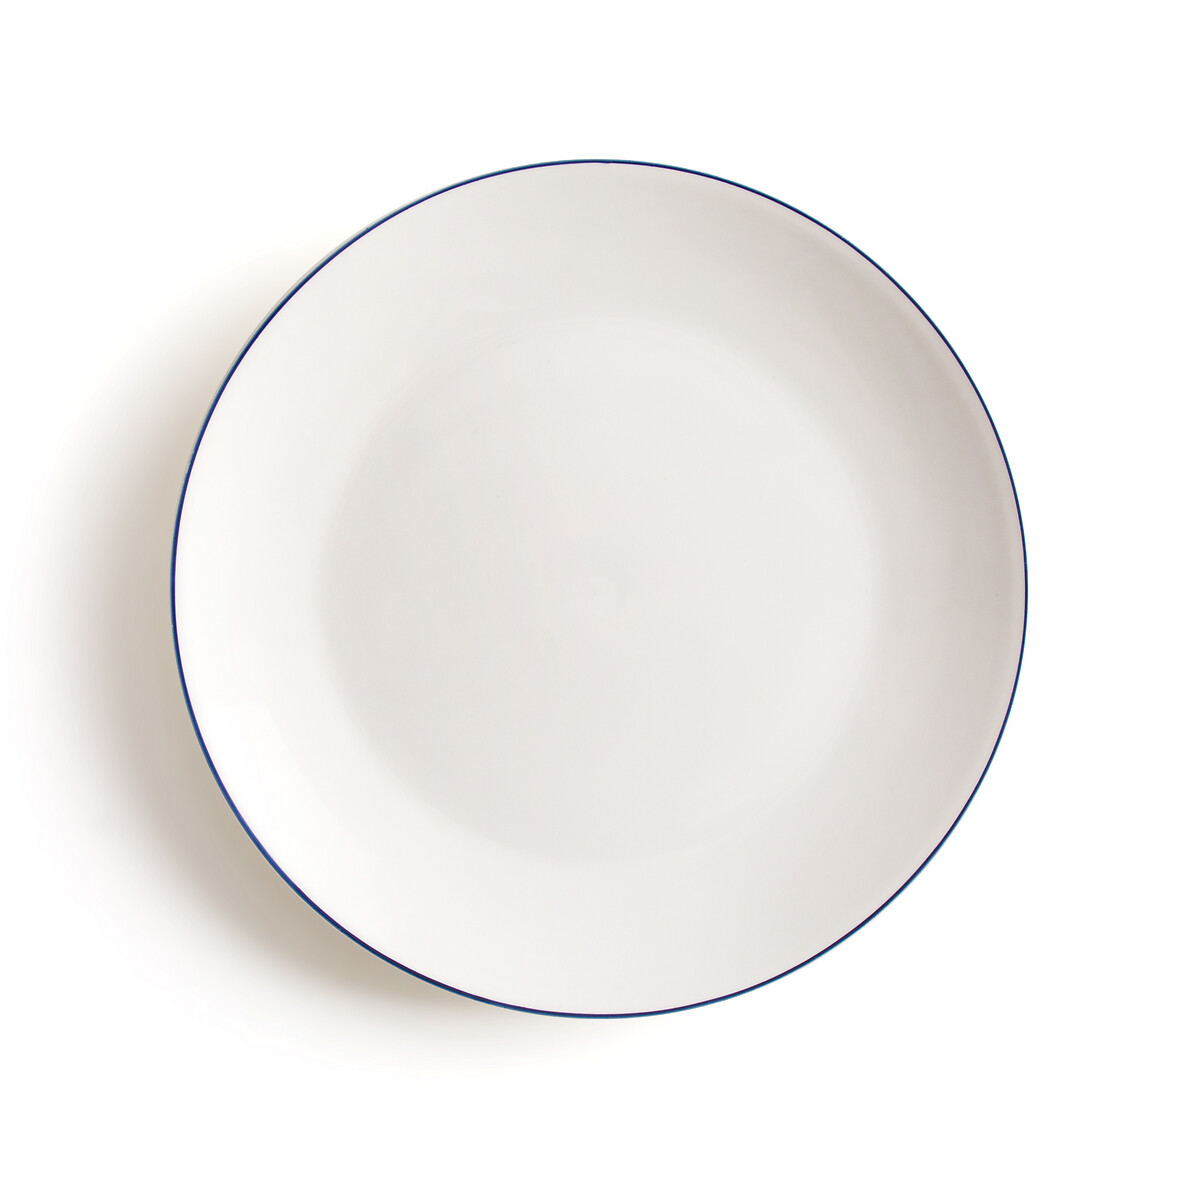 Lote de 4 platos llanos de porcelana, malo blanco/azul La Redoute